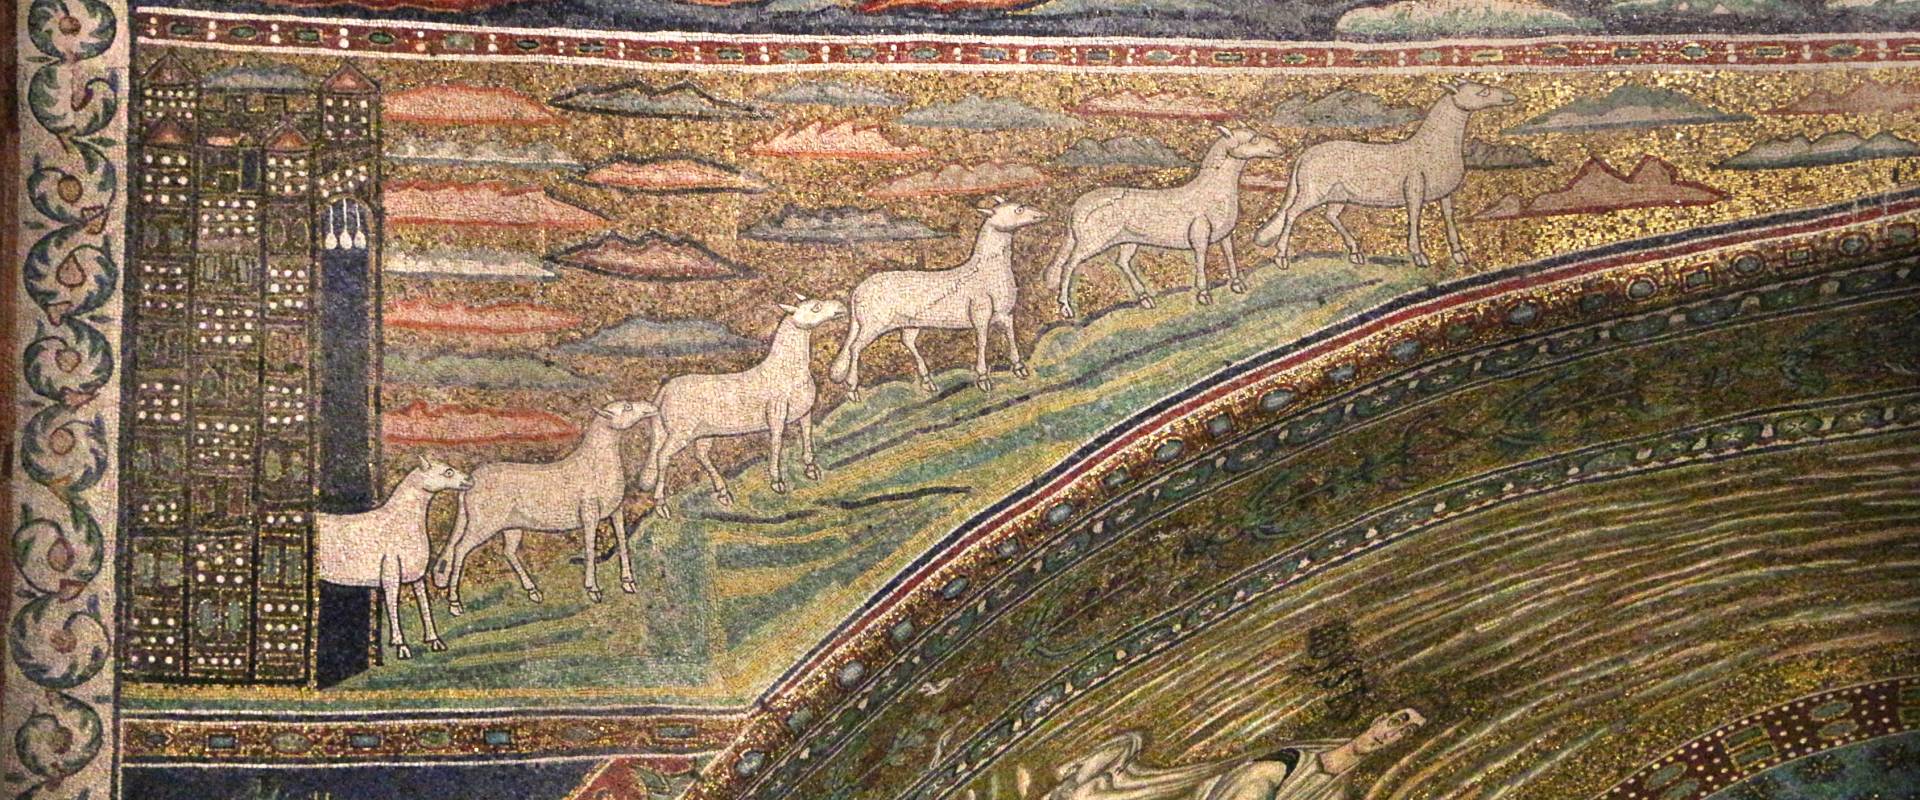 Sant'apollinare in classe, mosaici dell'arcone, 12 agnelli che escono da gerusalemme e betlemme (VII sec.) 10 foto di Sailko